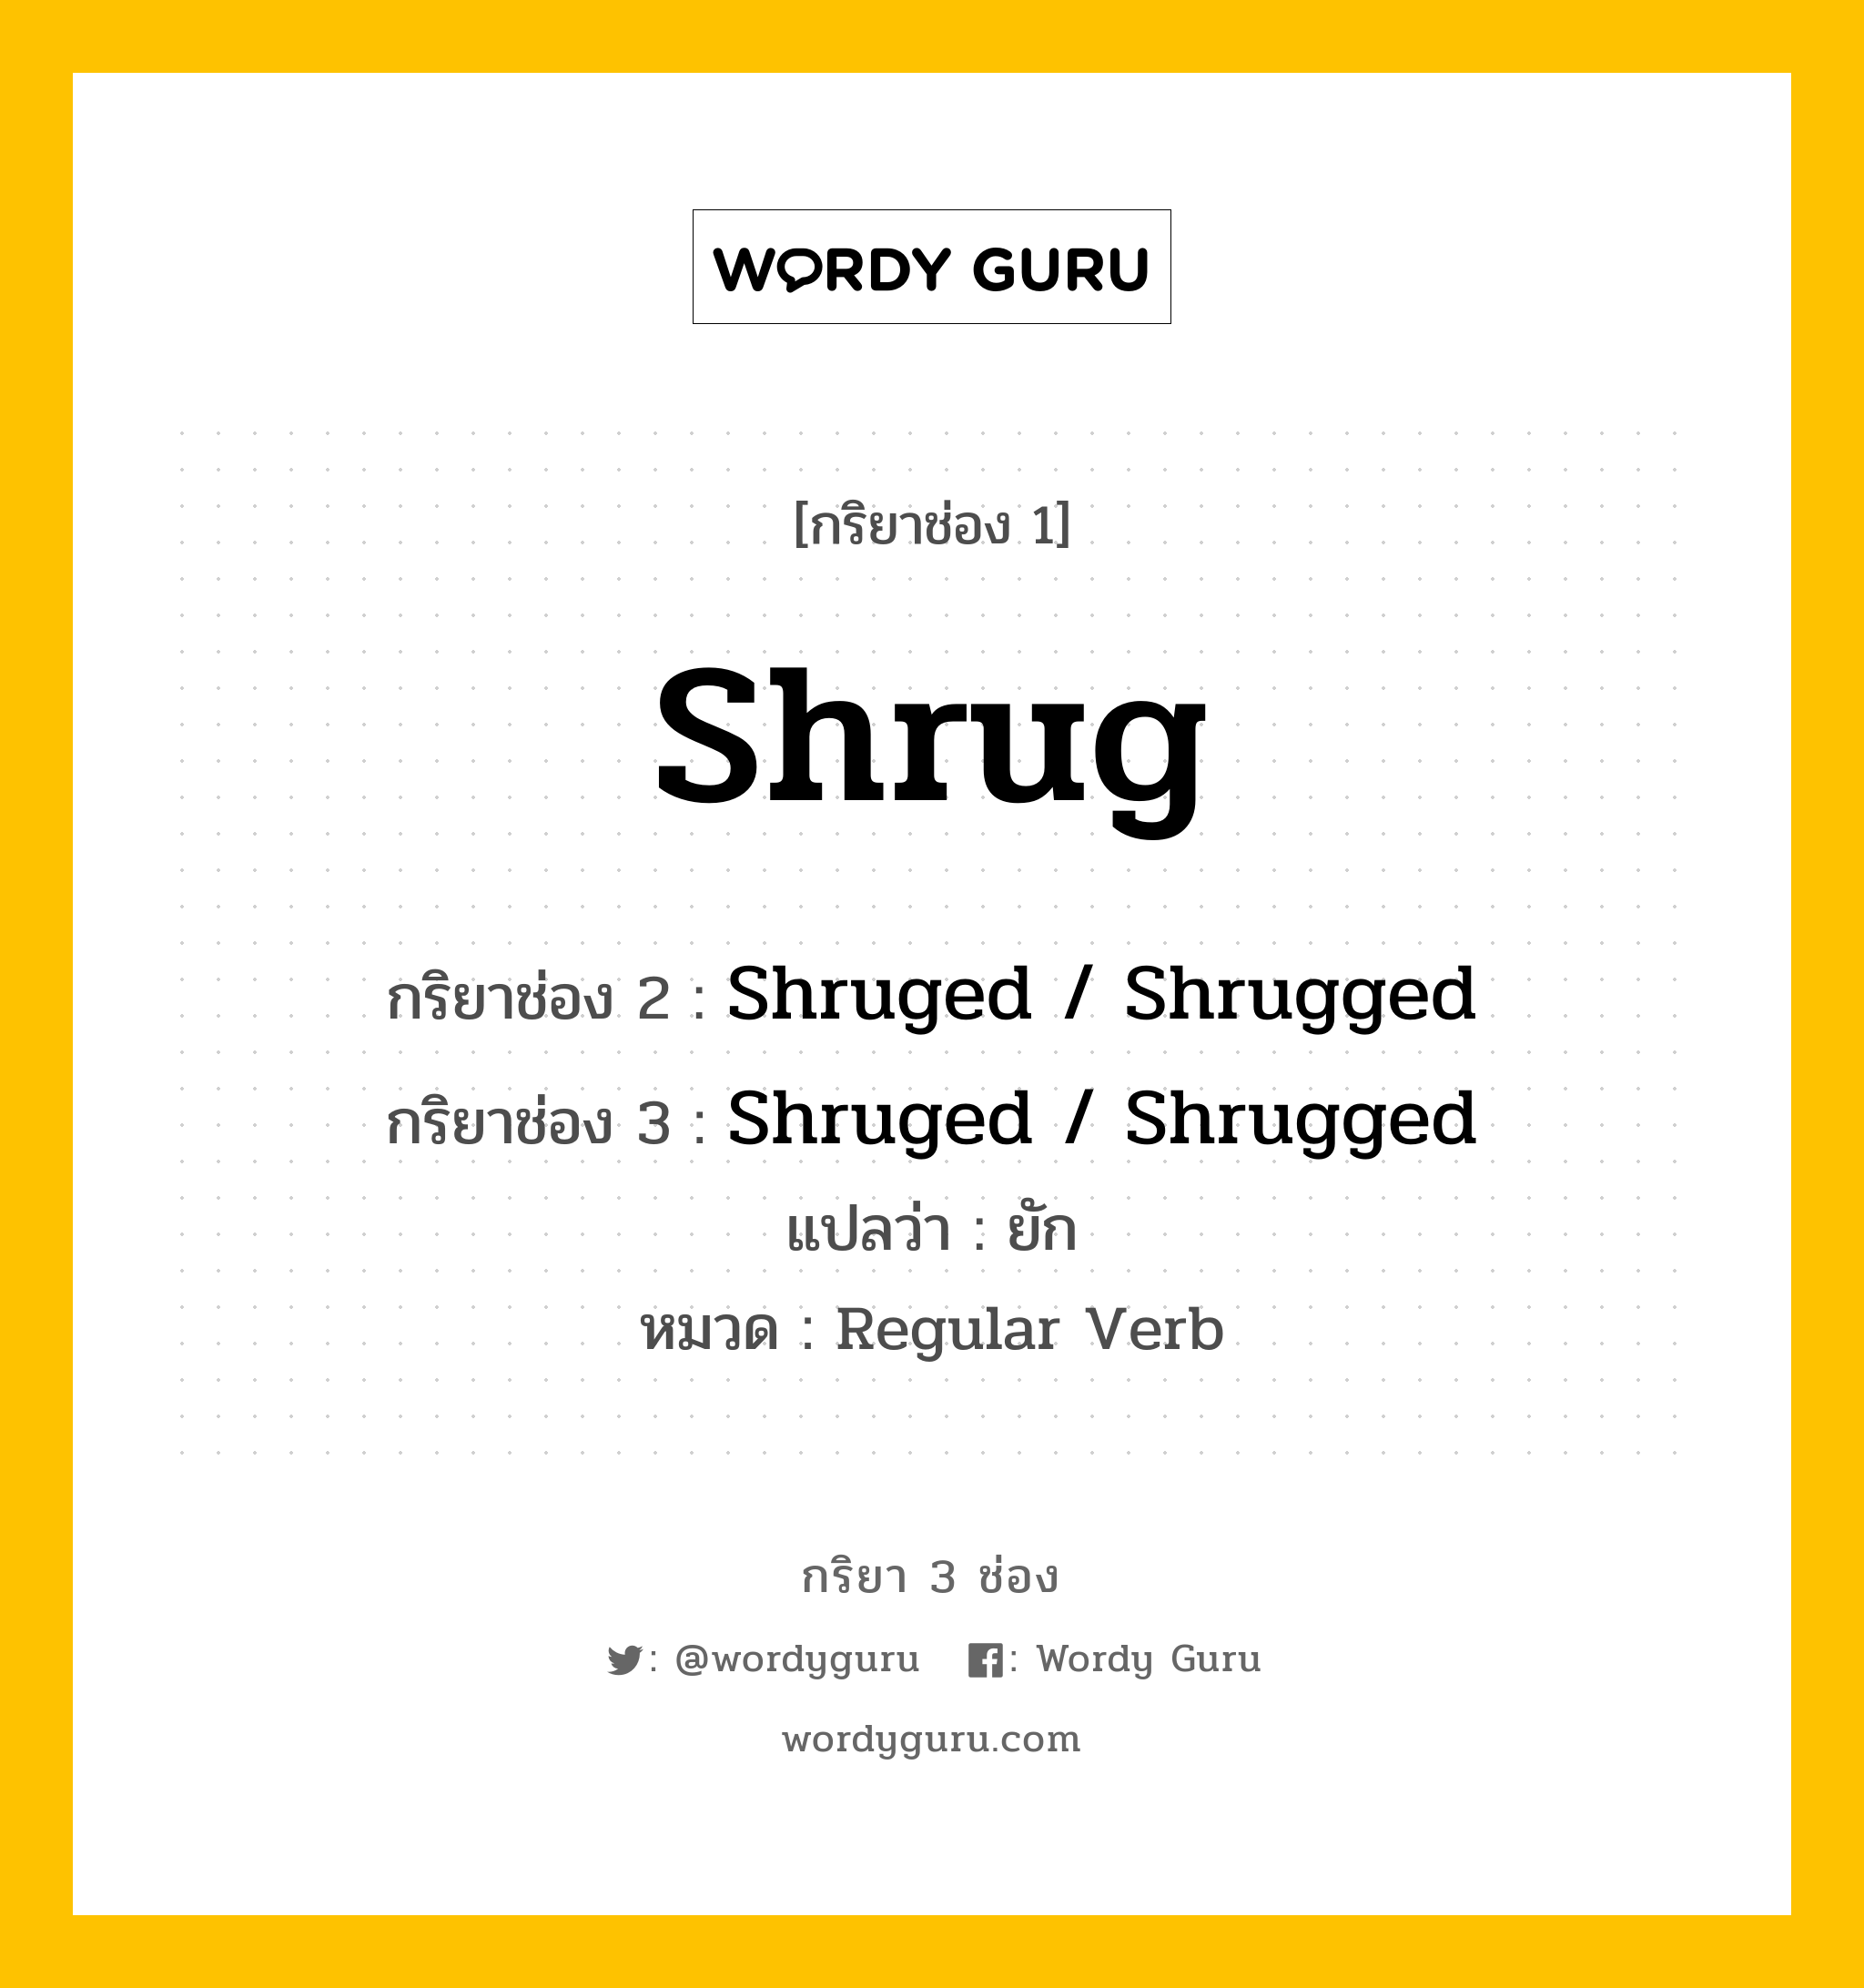 กริยา 3 ช่อง: Shrug ช่อง 2 Shrug ช่อง 3 คืออะไร, กริยาช่อง 1 Shrug กริยาช่อง 2 Shruged / Shrugged กริยาช่อง 3 Shruged / Shrugged แปลว่า ยัก หมวด Regular Verb หมวด Regular Verb